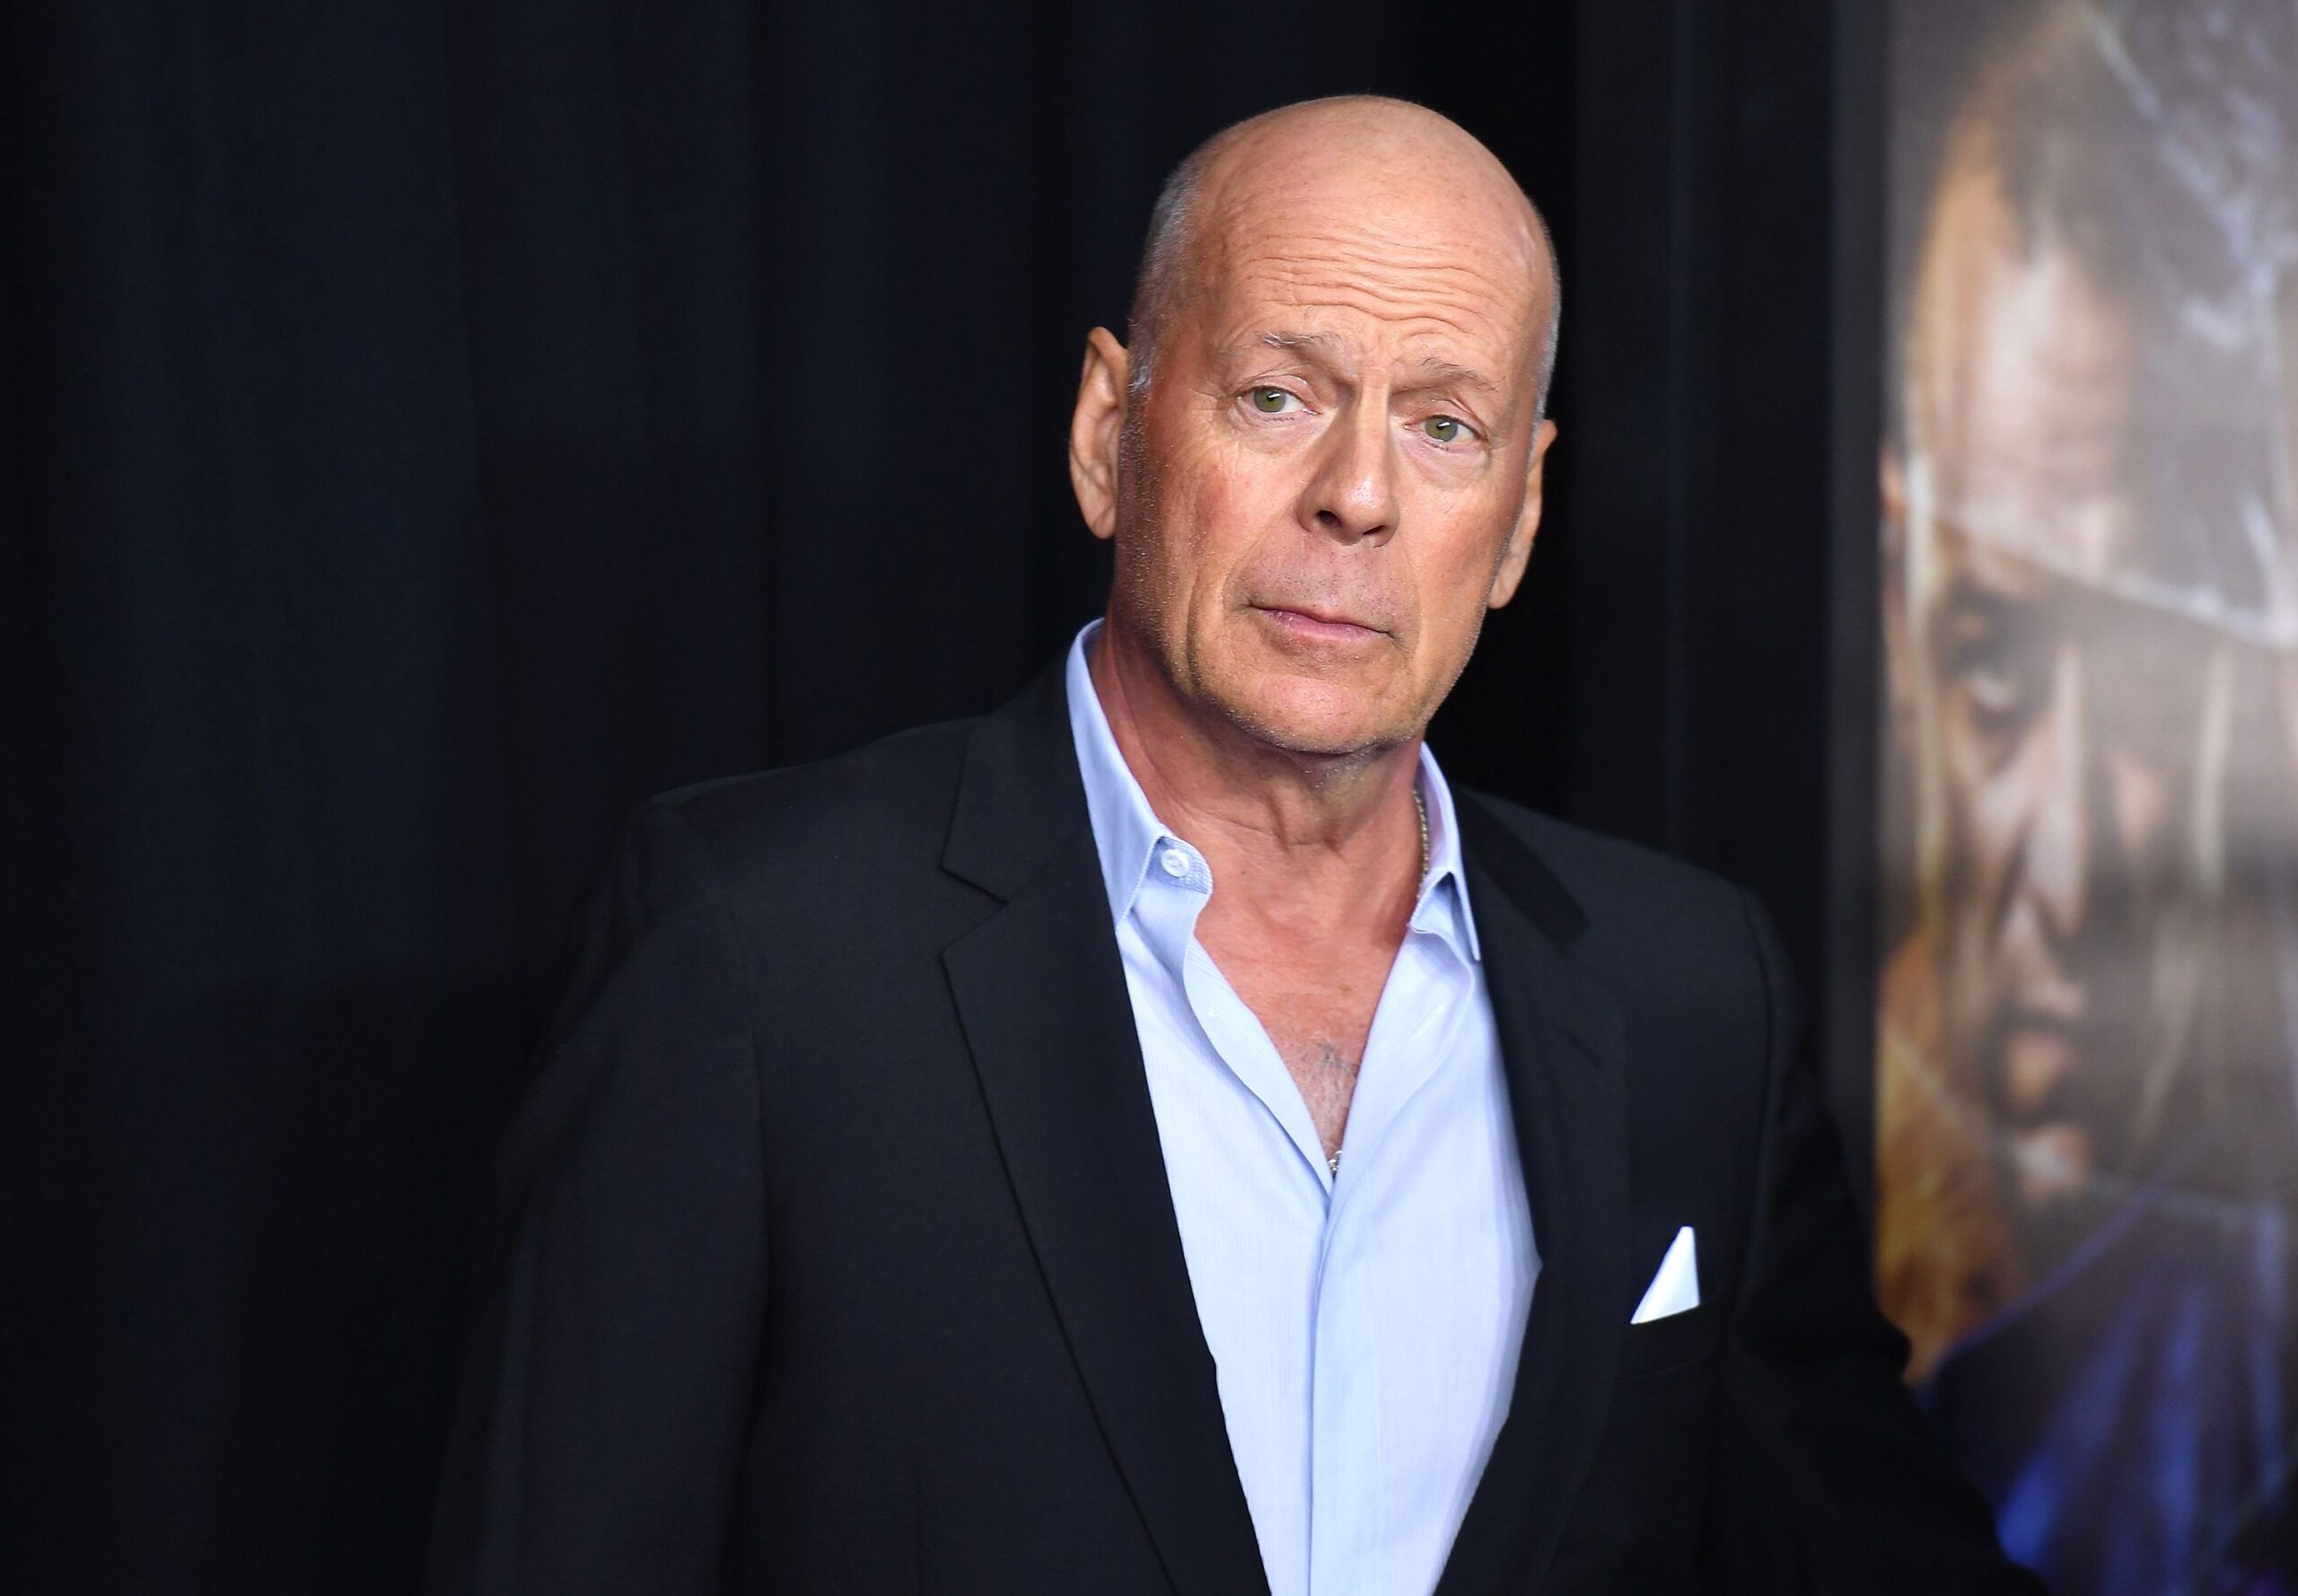 Bruce Willis es diagnosticado con demencia